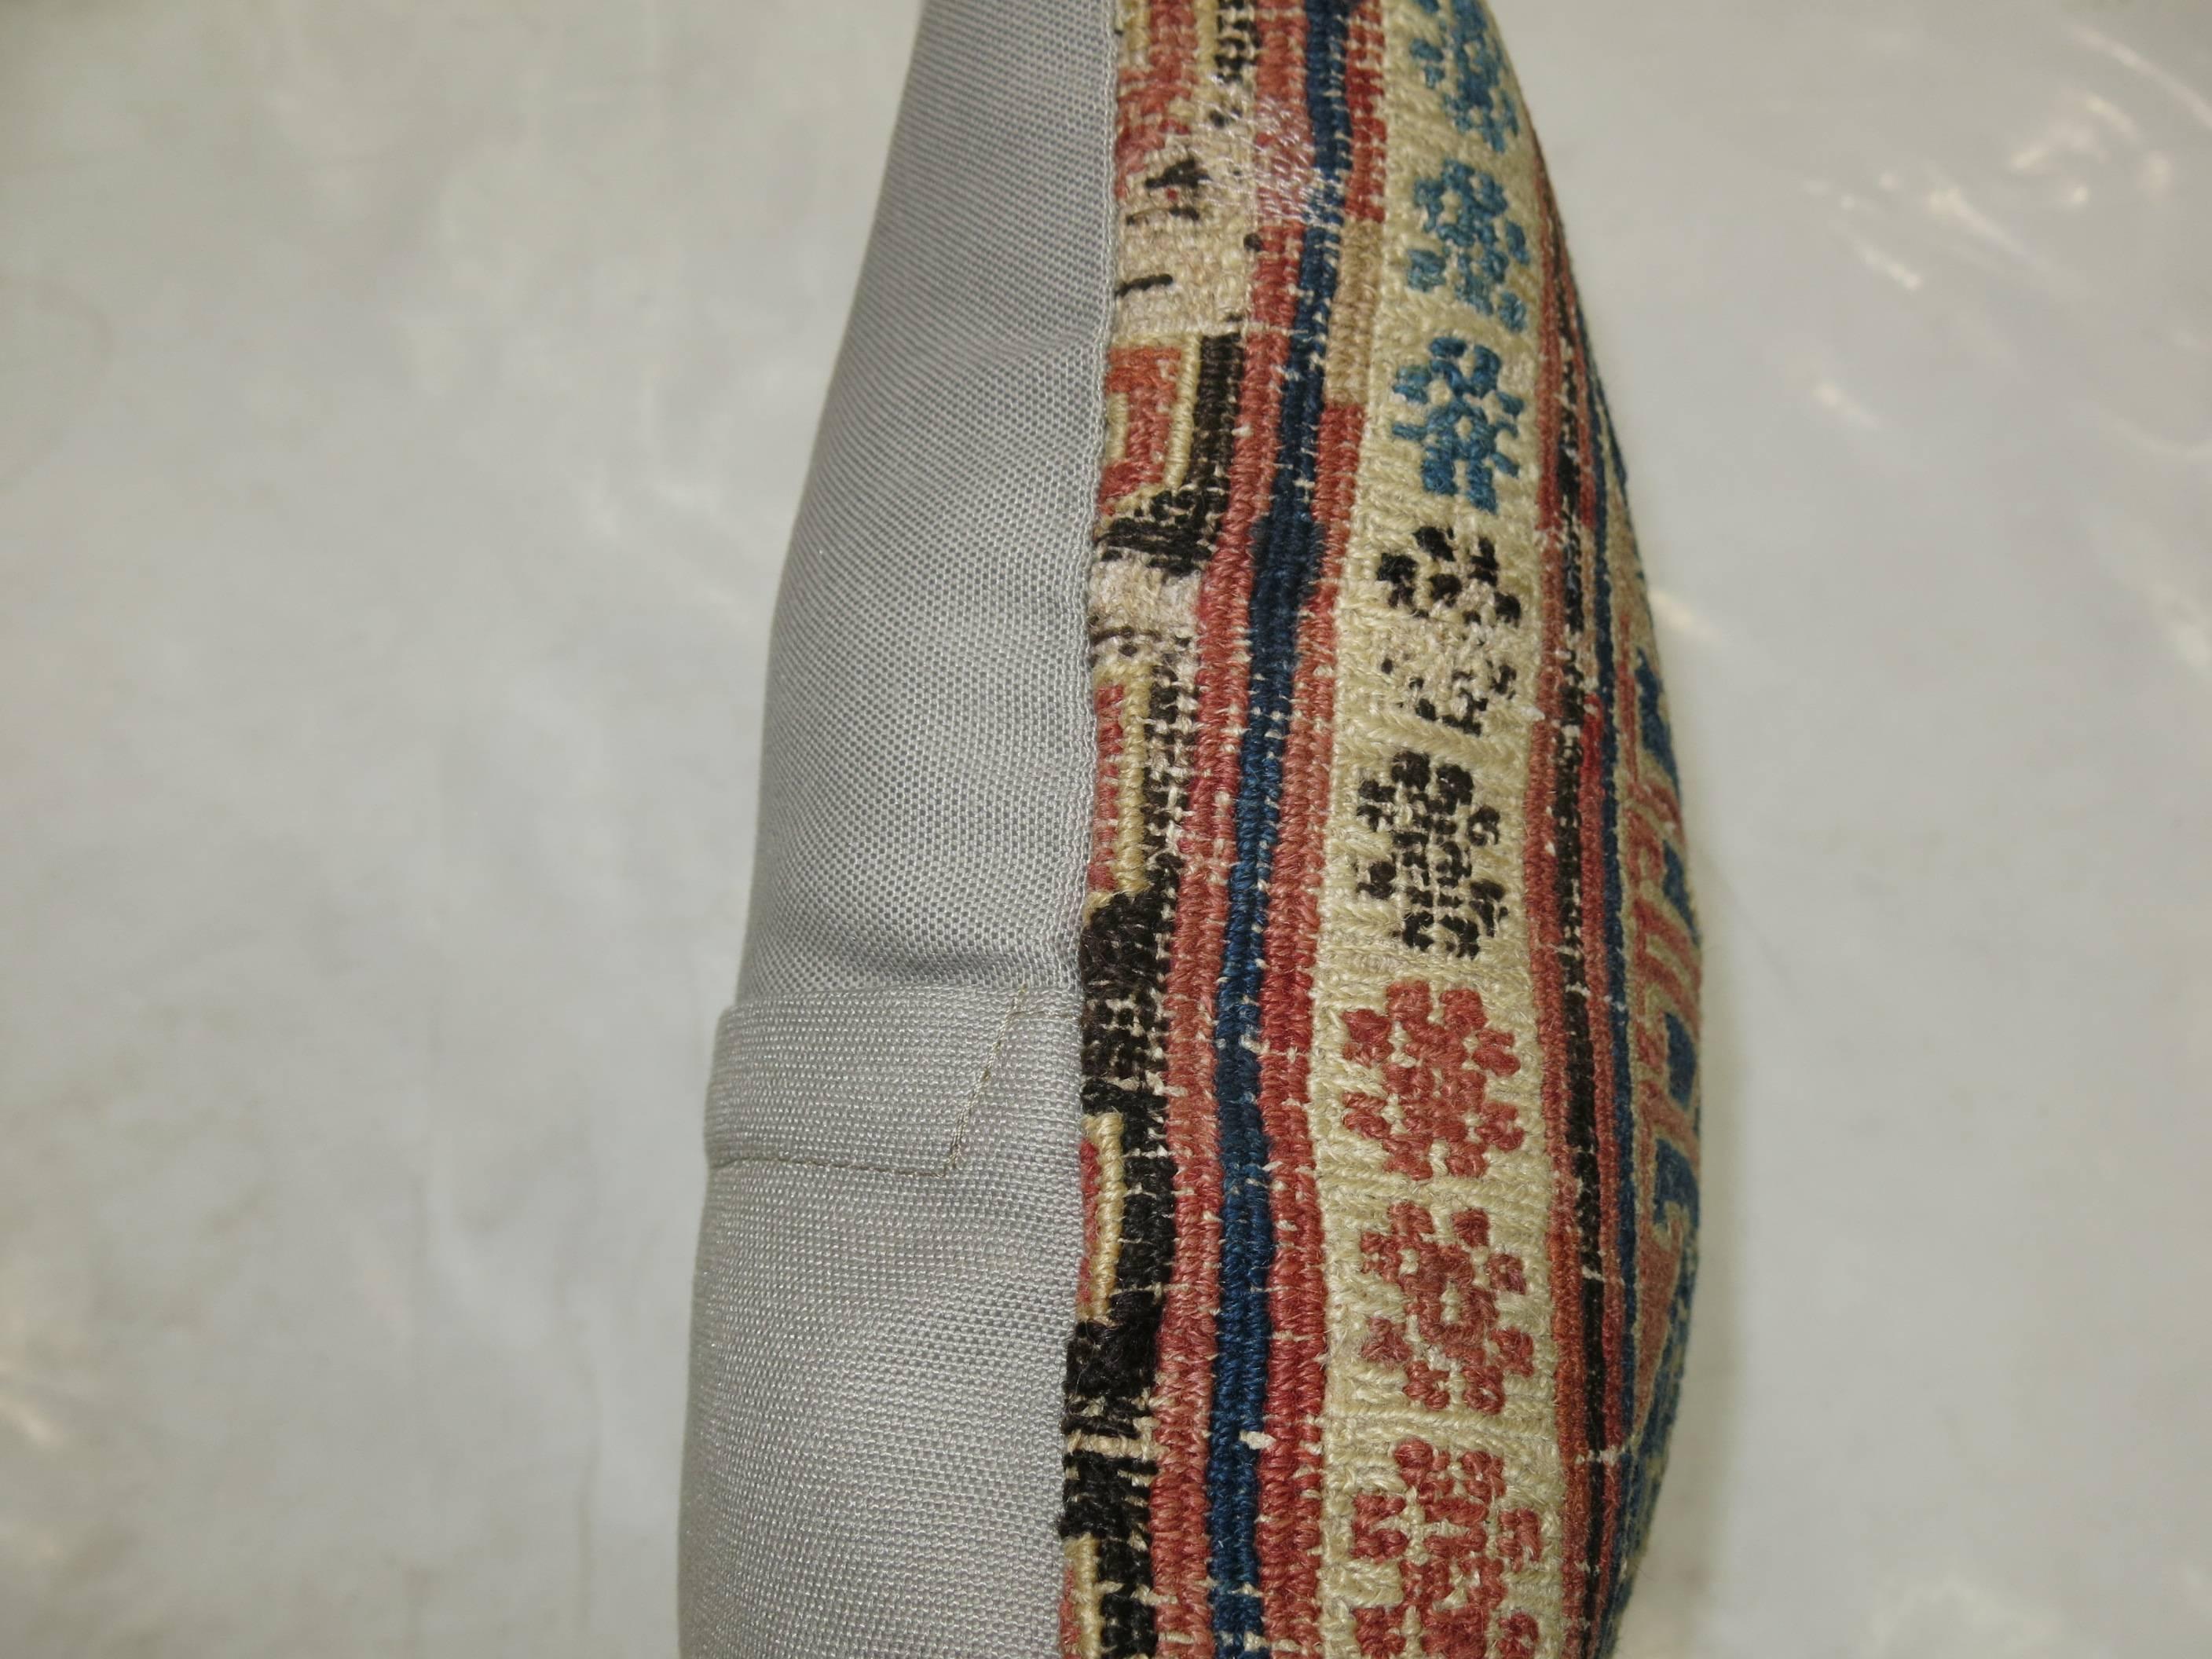 Pillow made from an 18th century Soumak flat-weave rug.